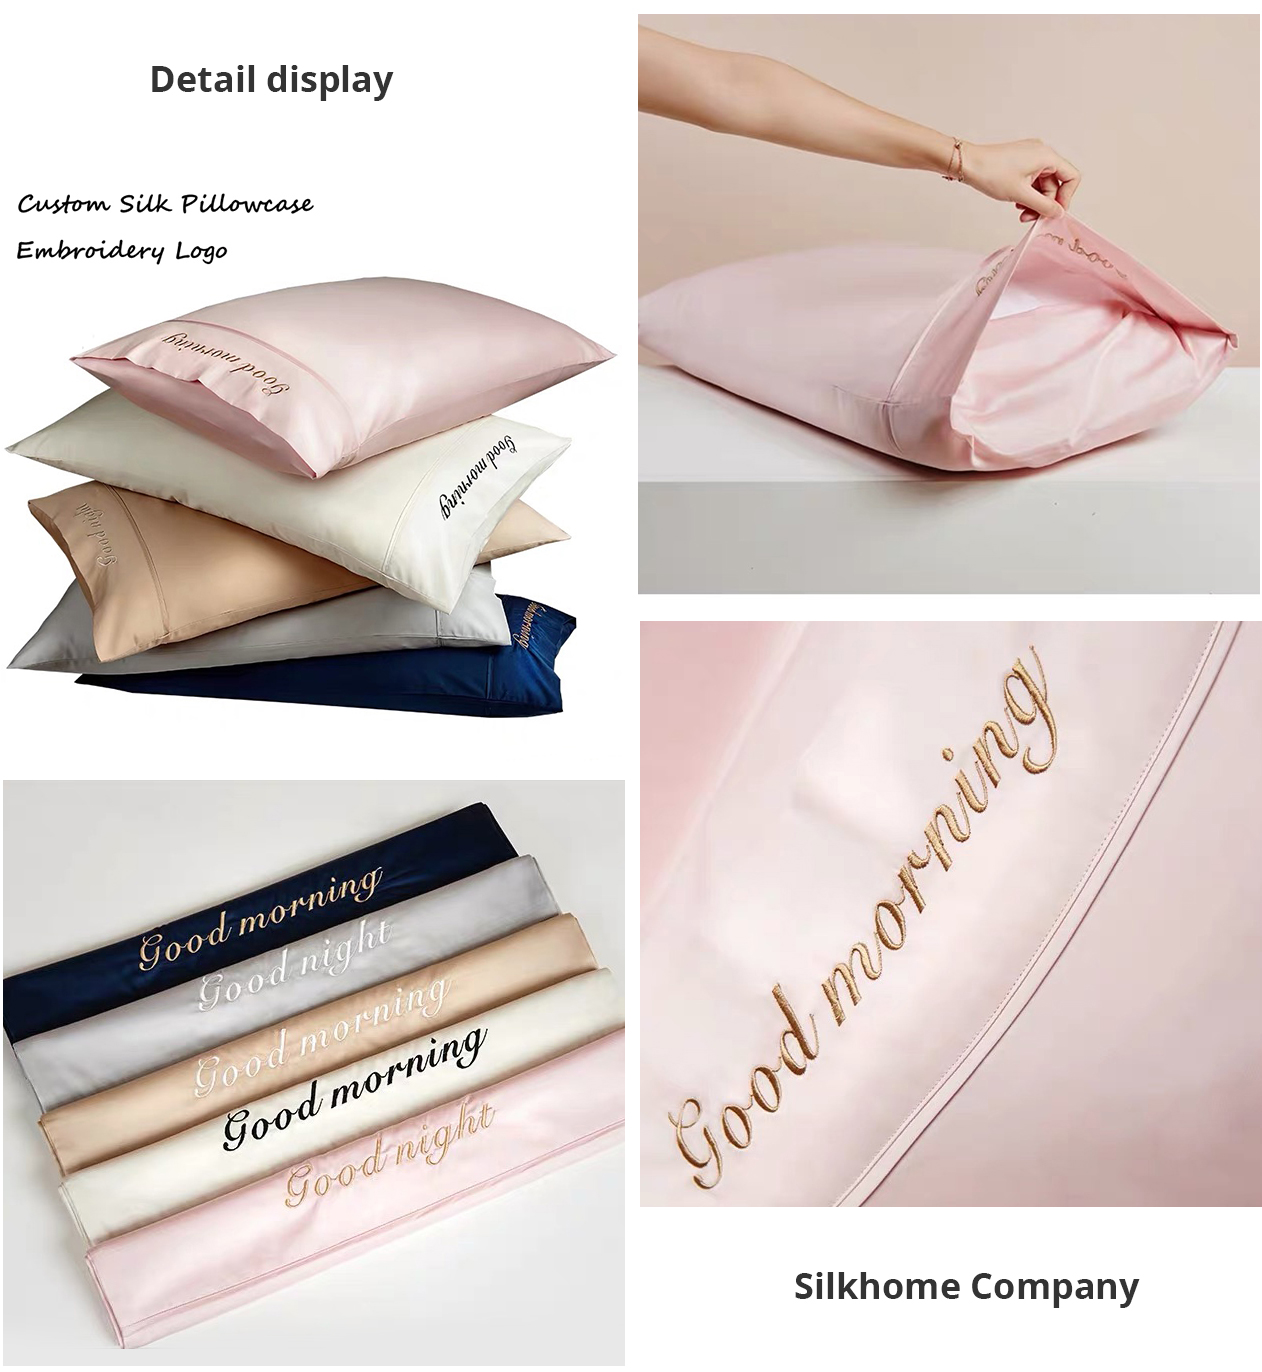 China 100% Silk Pillowcase supplier, manufacturer, factory